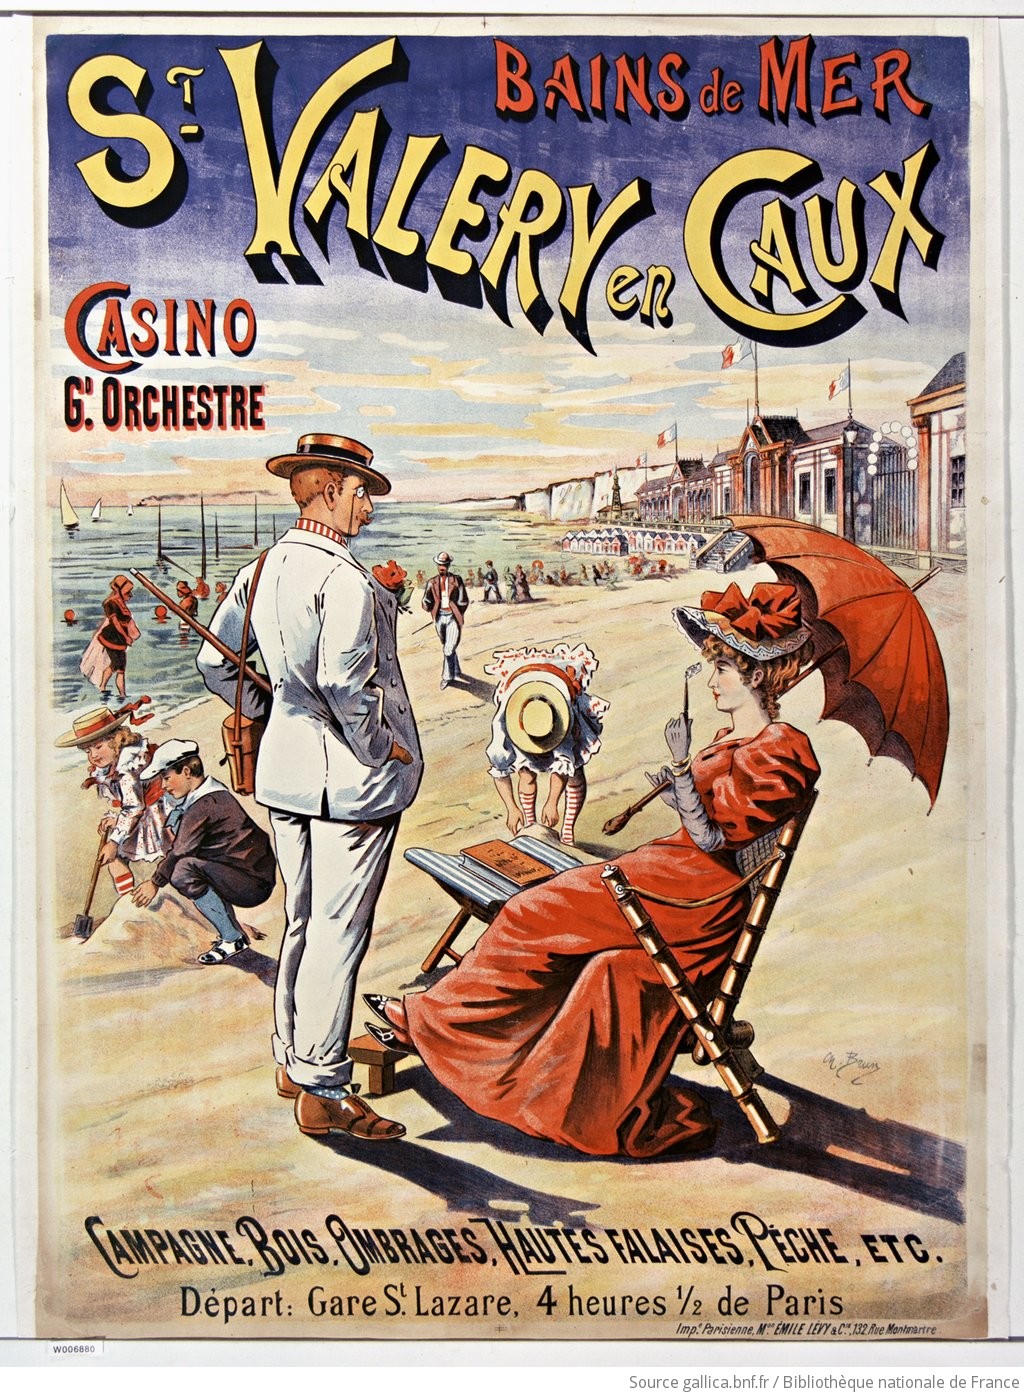 Póster anunciando la estación balnearia de St. Valery en Caux (1895). Imagen: Gallica, Bibliotèque National de France.